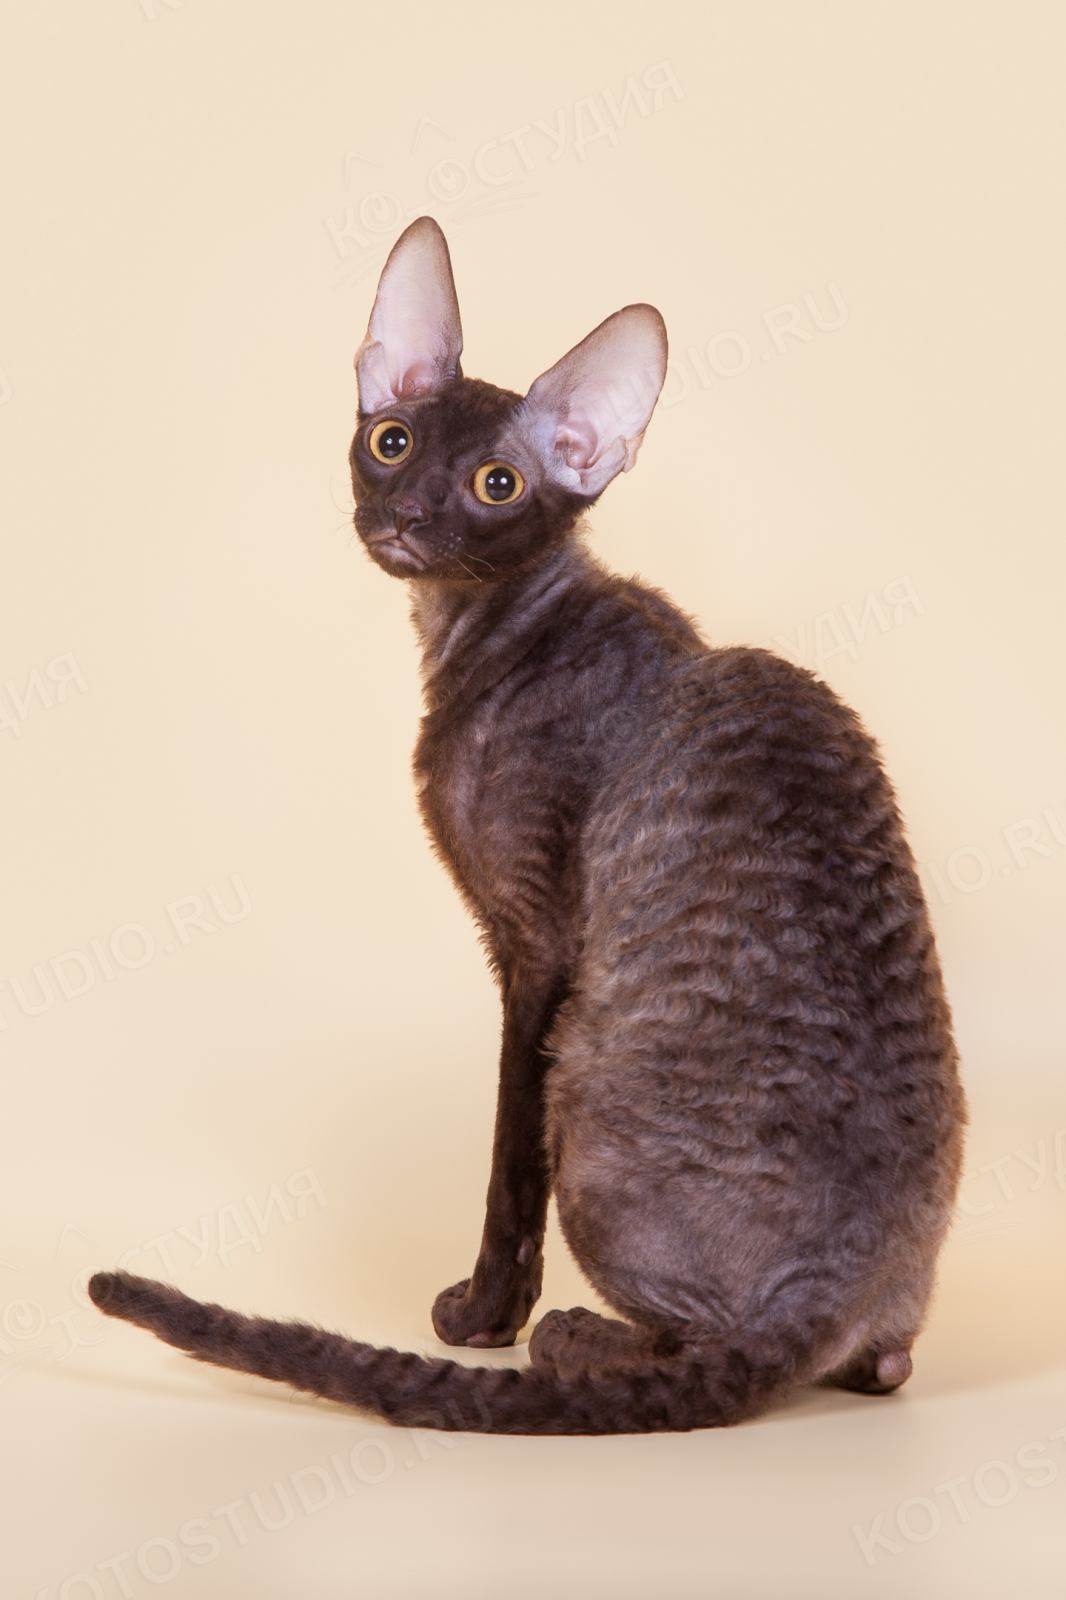 Корниш-рекс: описание породы, характер кошки, советы по содержанию и уходу, фото, отзывы